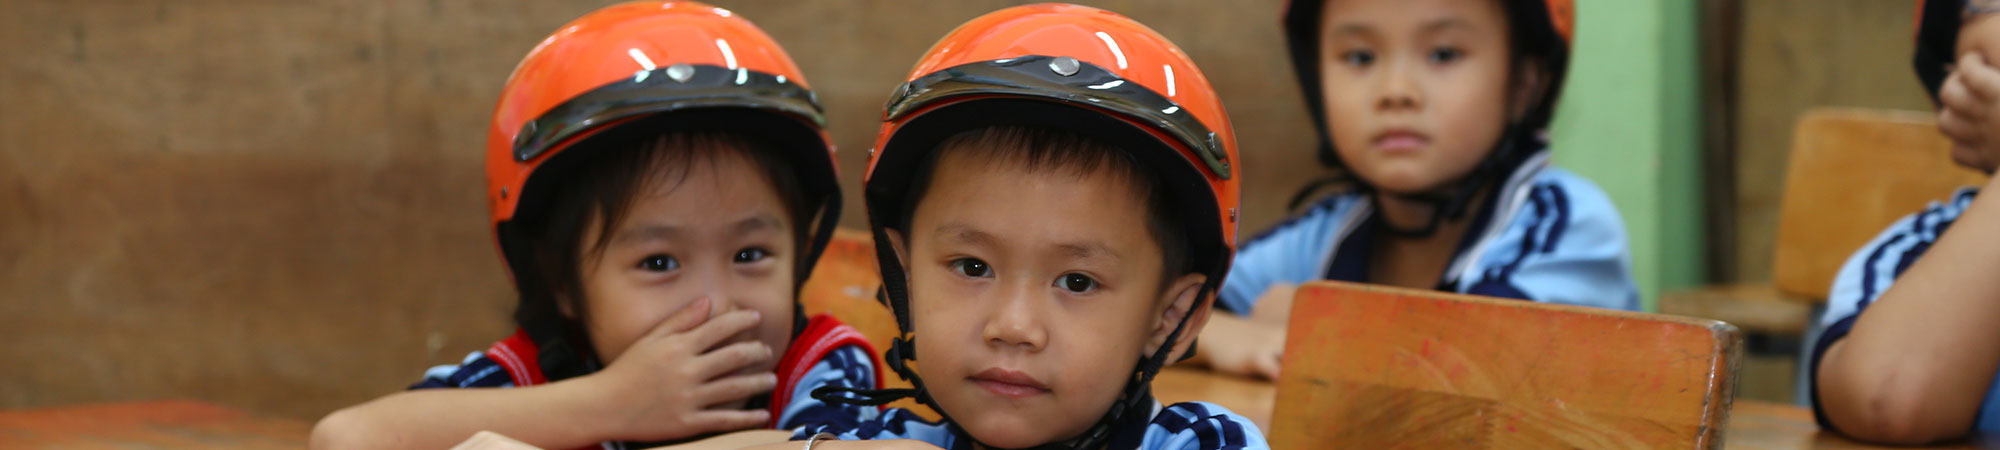 Helmets for Kids